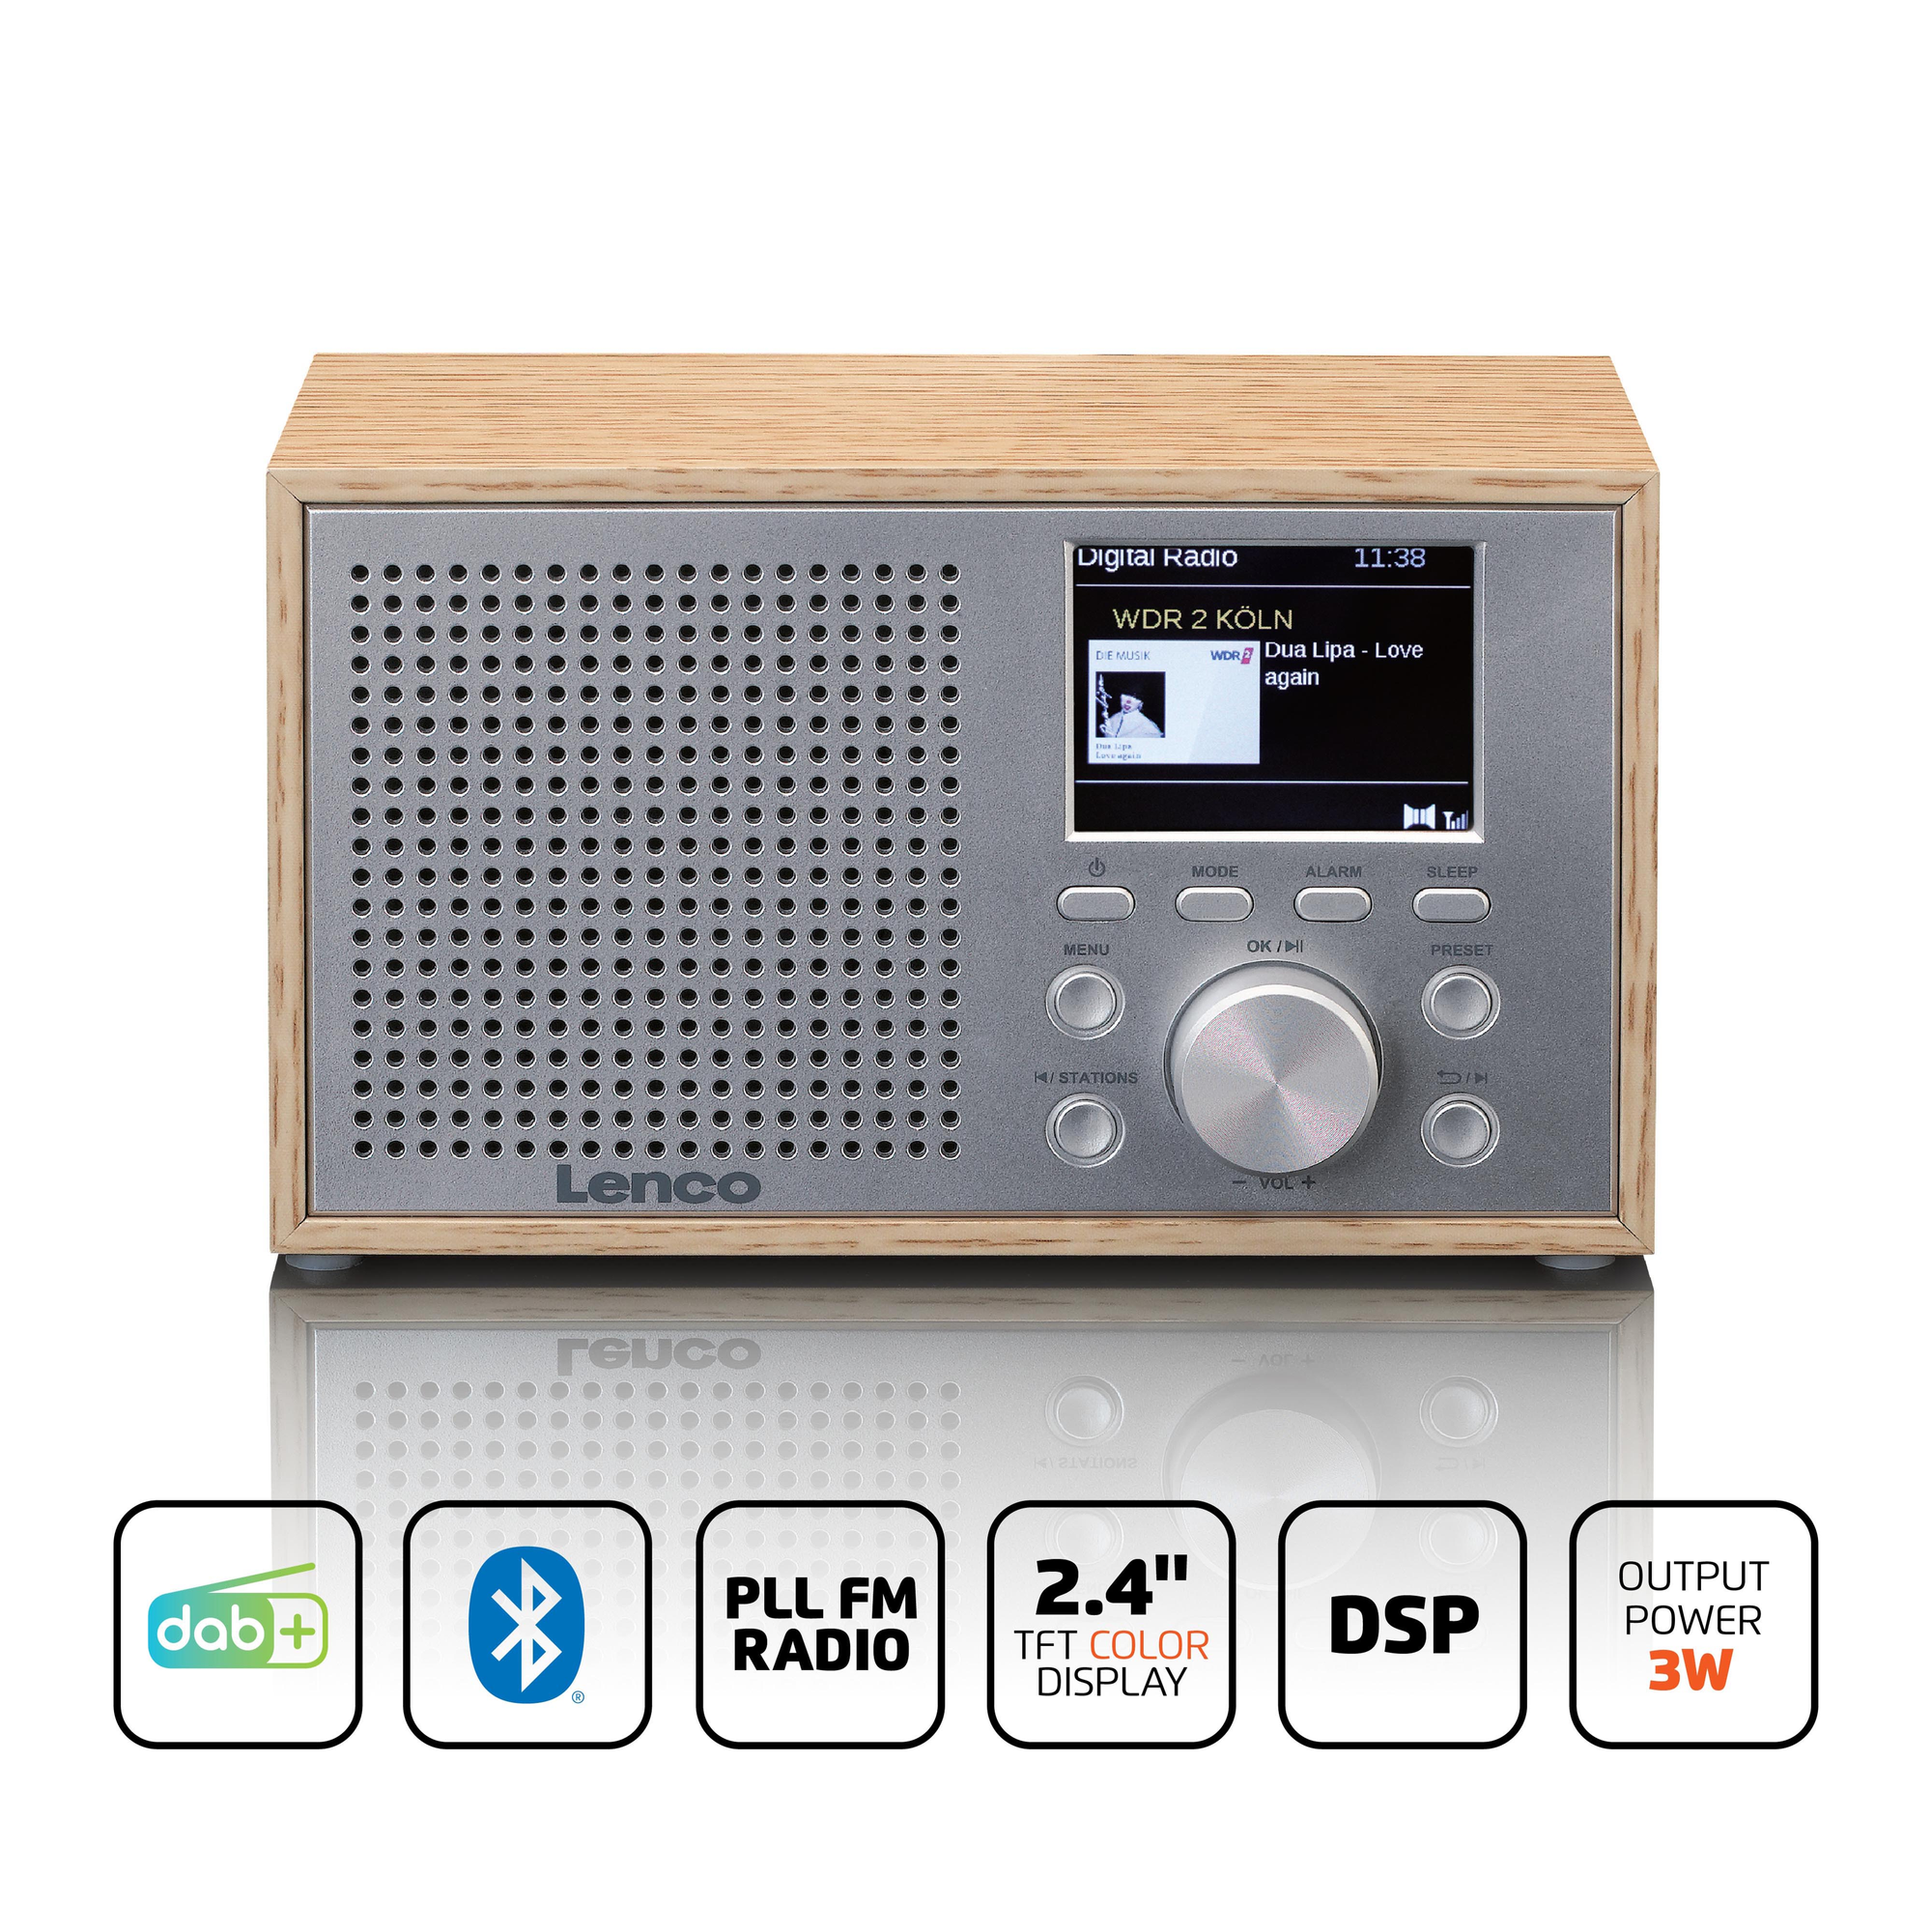 LENCO Radio, Bluetooth, FM, Radiowecker Holz DAB+,Tischradio,Tragbares DAB+, DAB, DAR-017WH -